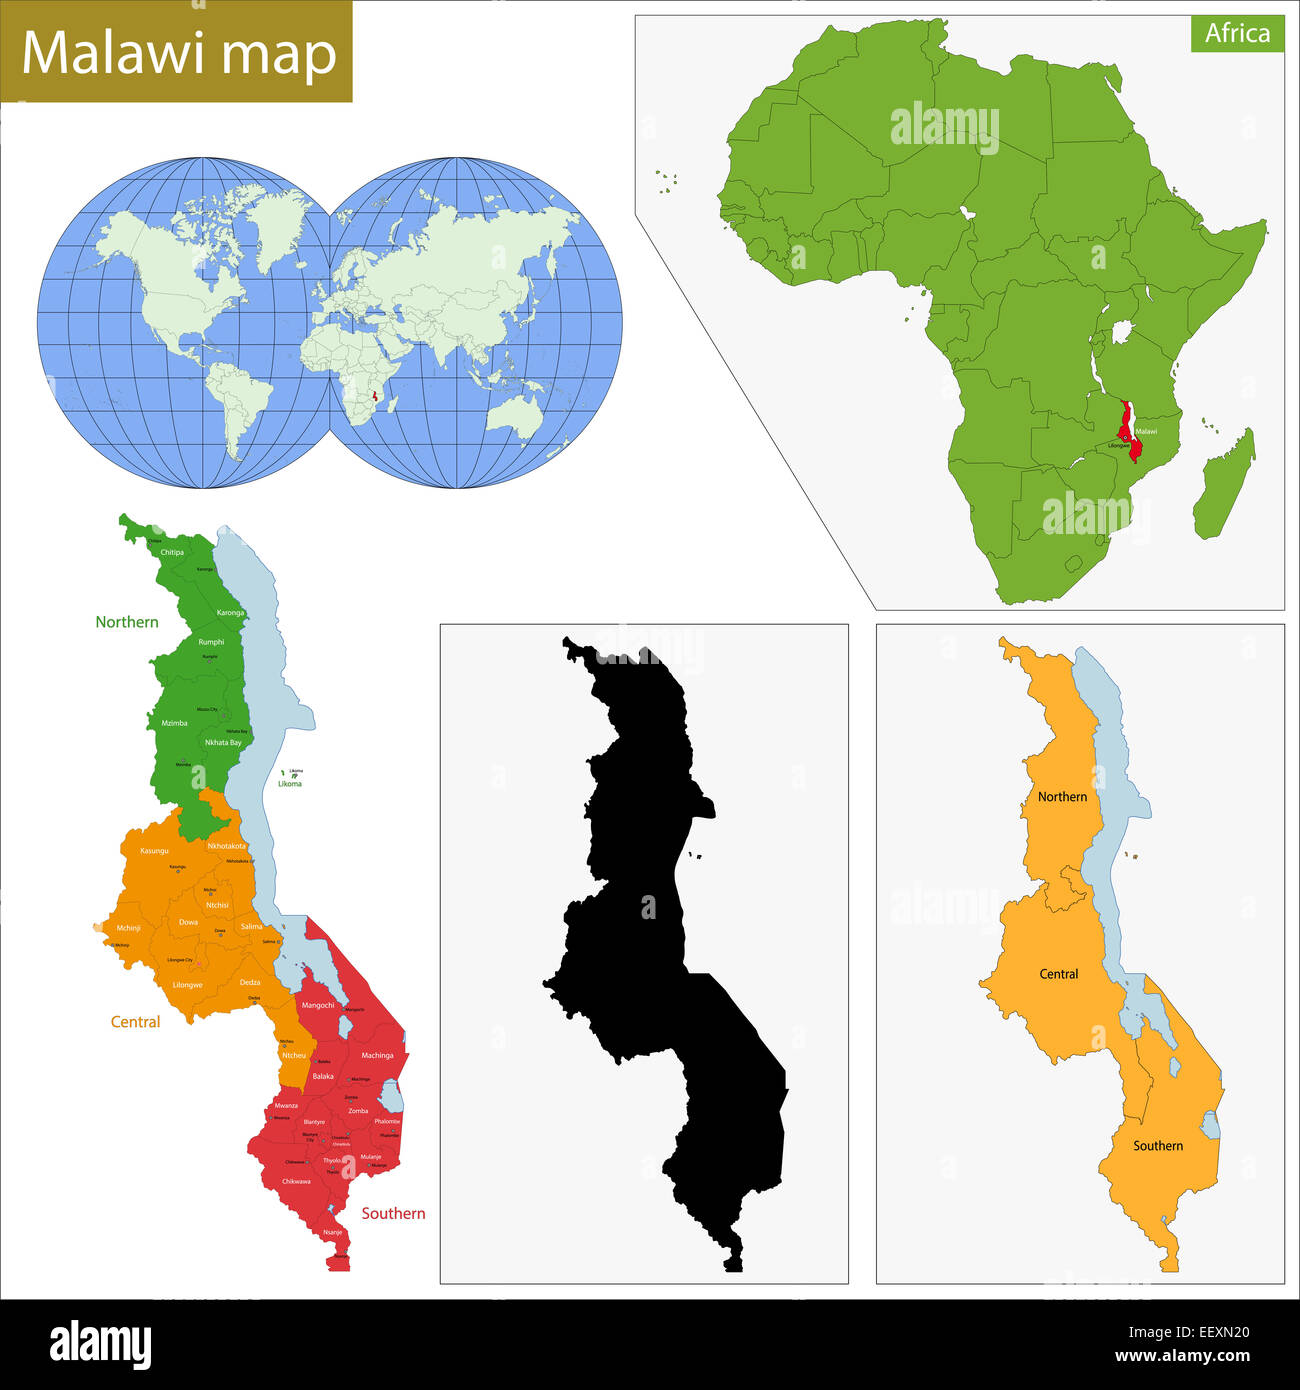 Malawi map Stock Photo